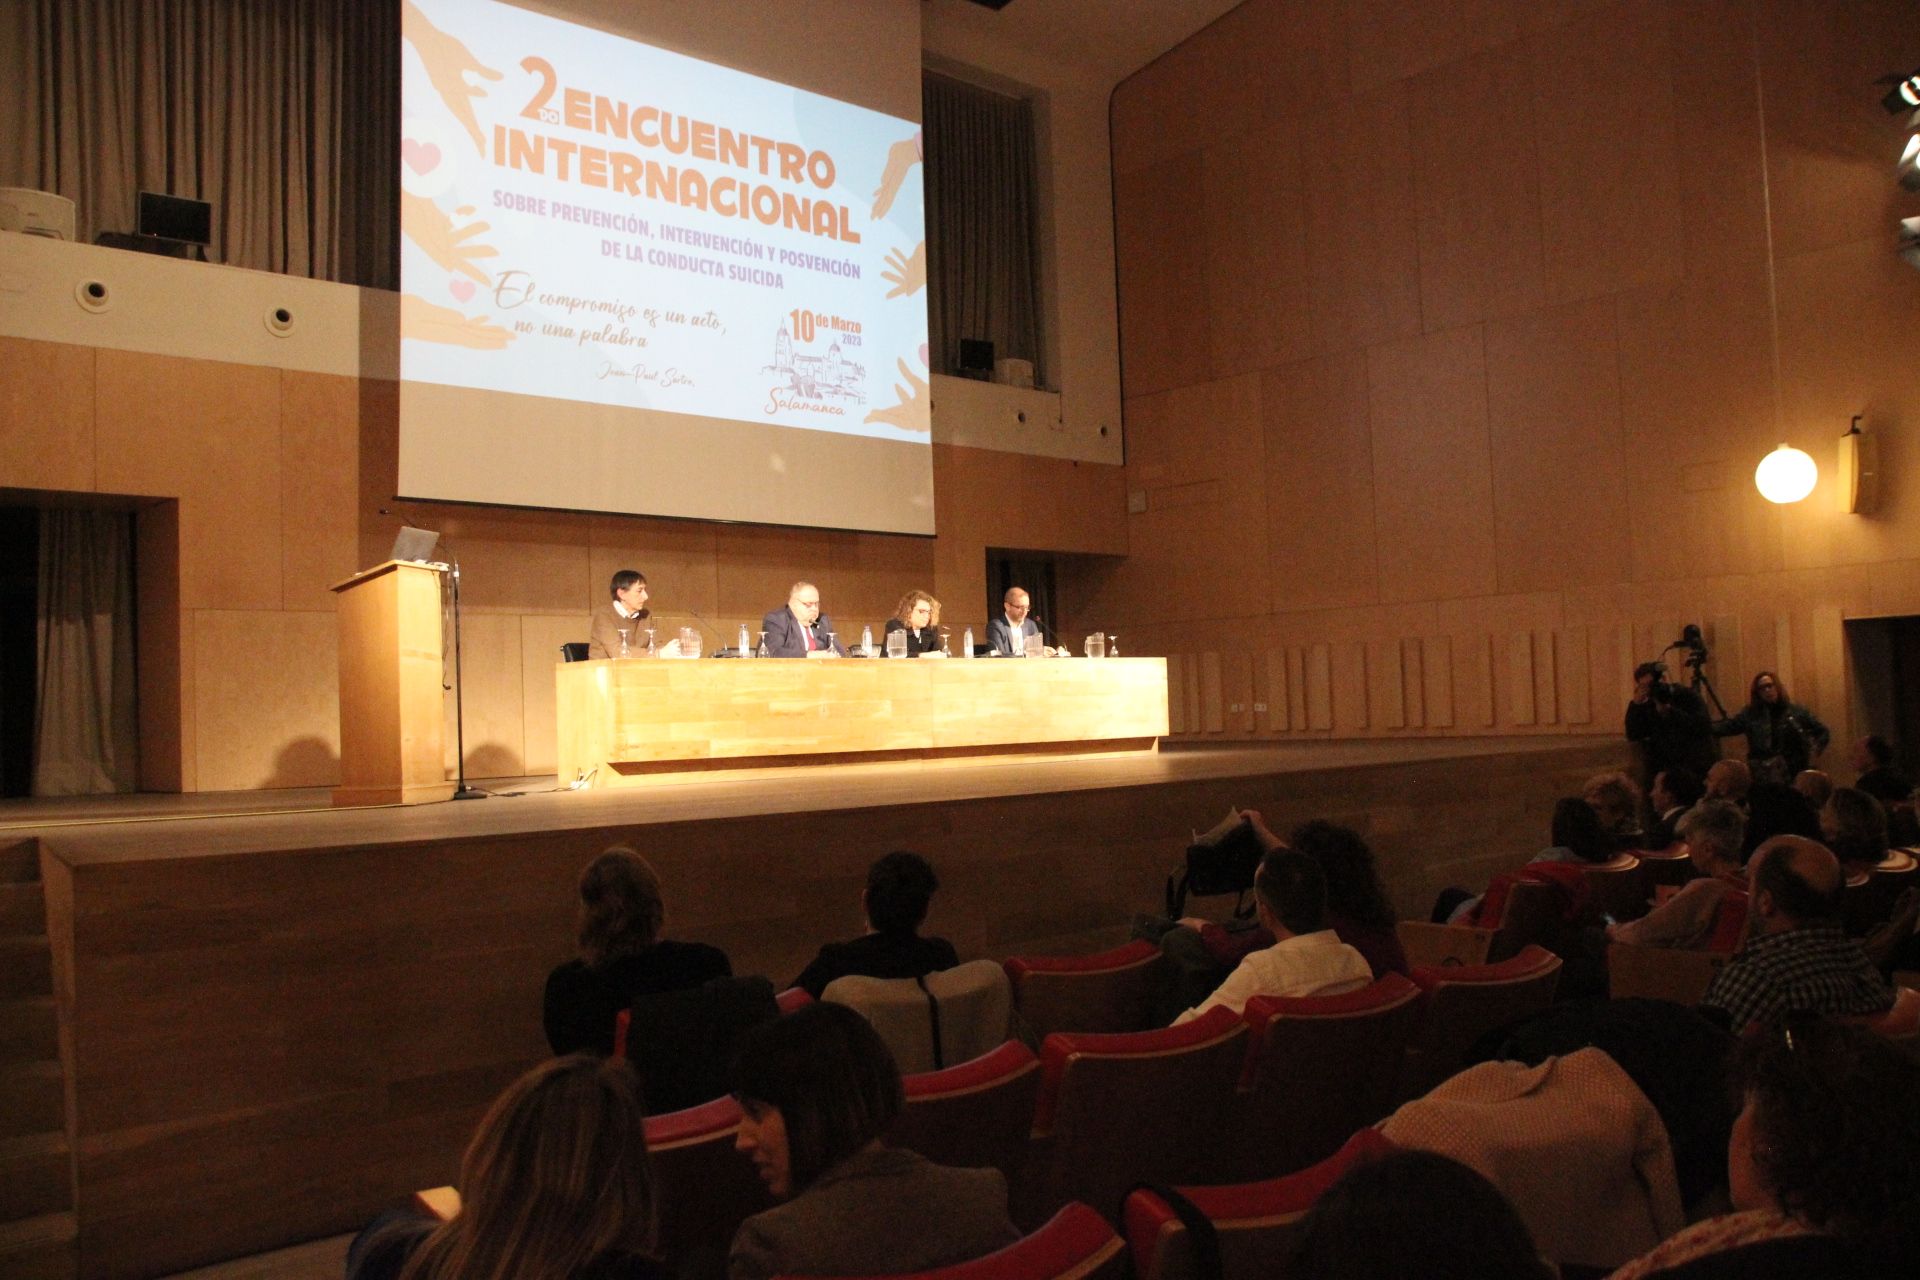 Alejandro Vázquez Ramos, asiste al acto de apertura del II Encuentro Internacional sobre Prevención, Intervención y Posvención de la Conducta Suicida